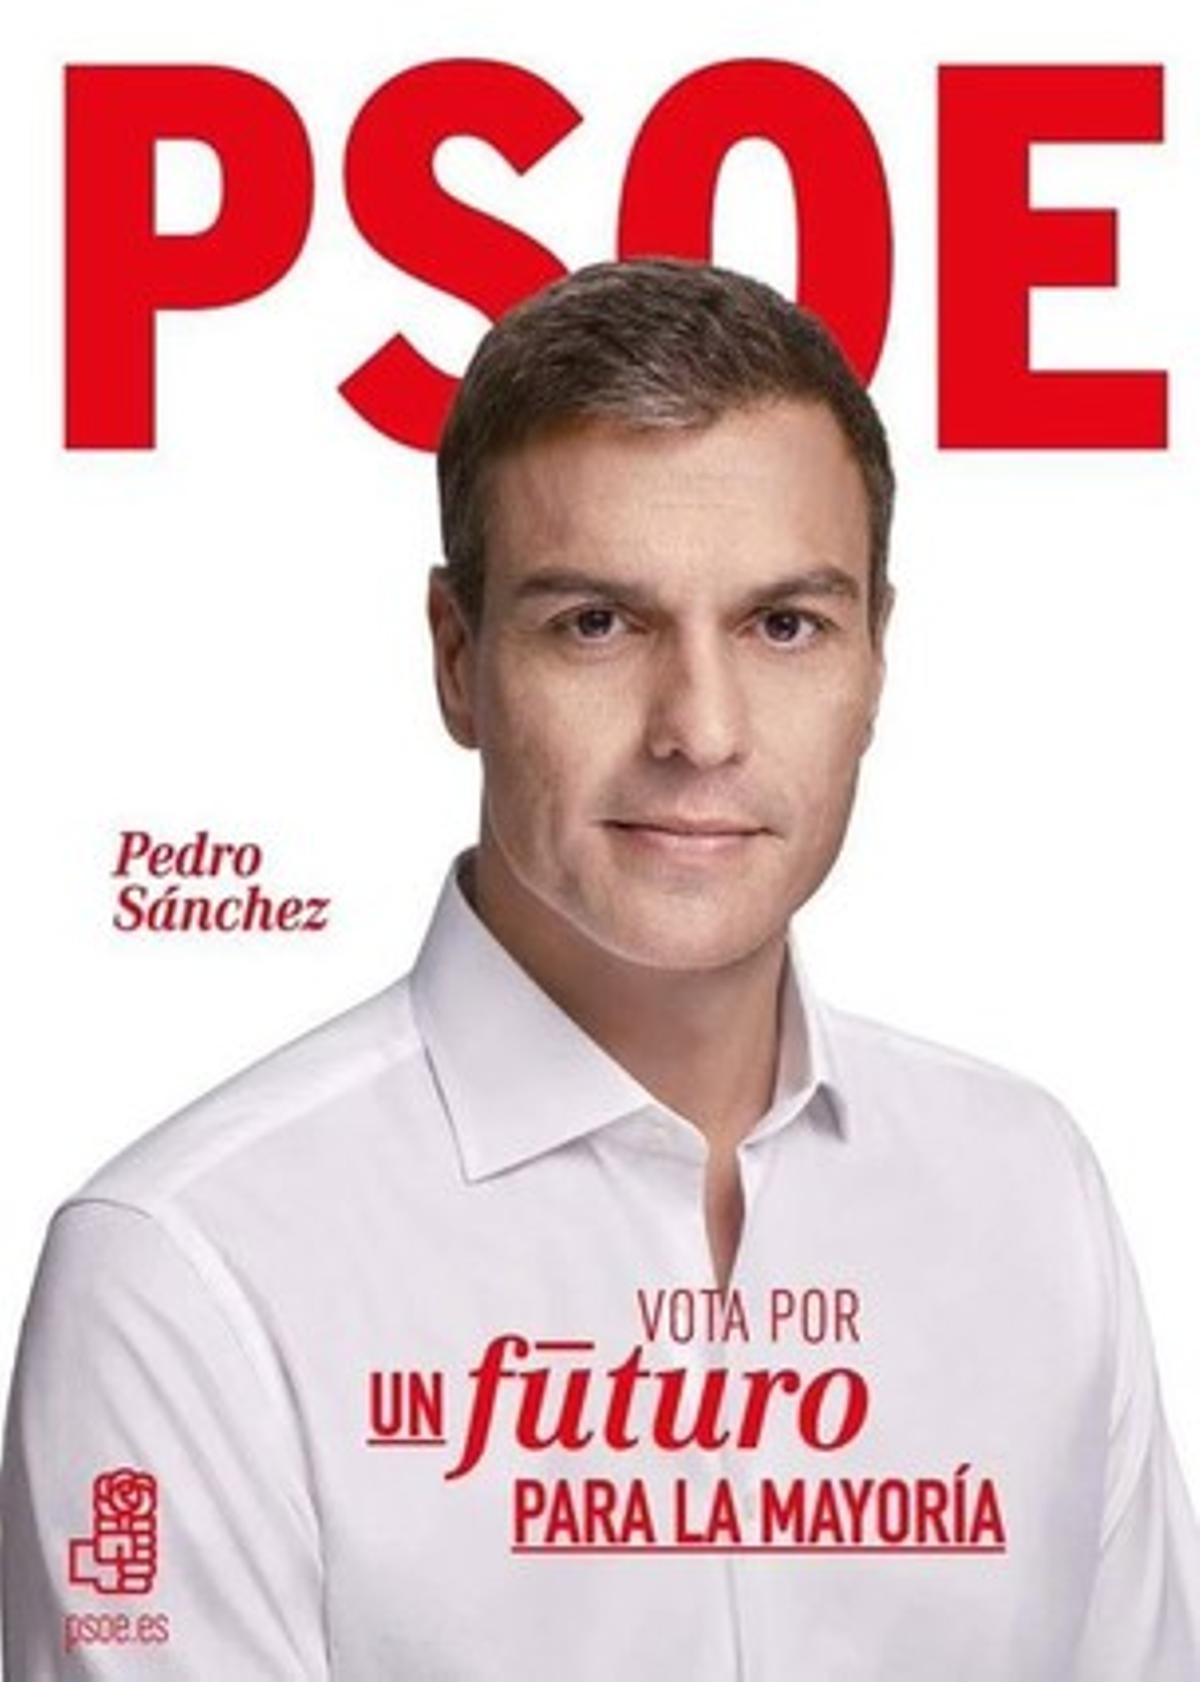 Cartell electoral del PSOE per a les eleccions generals del 2015.